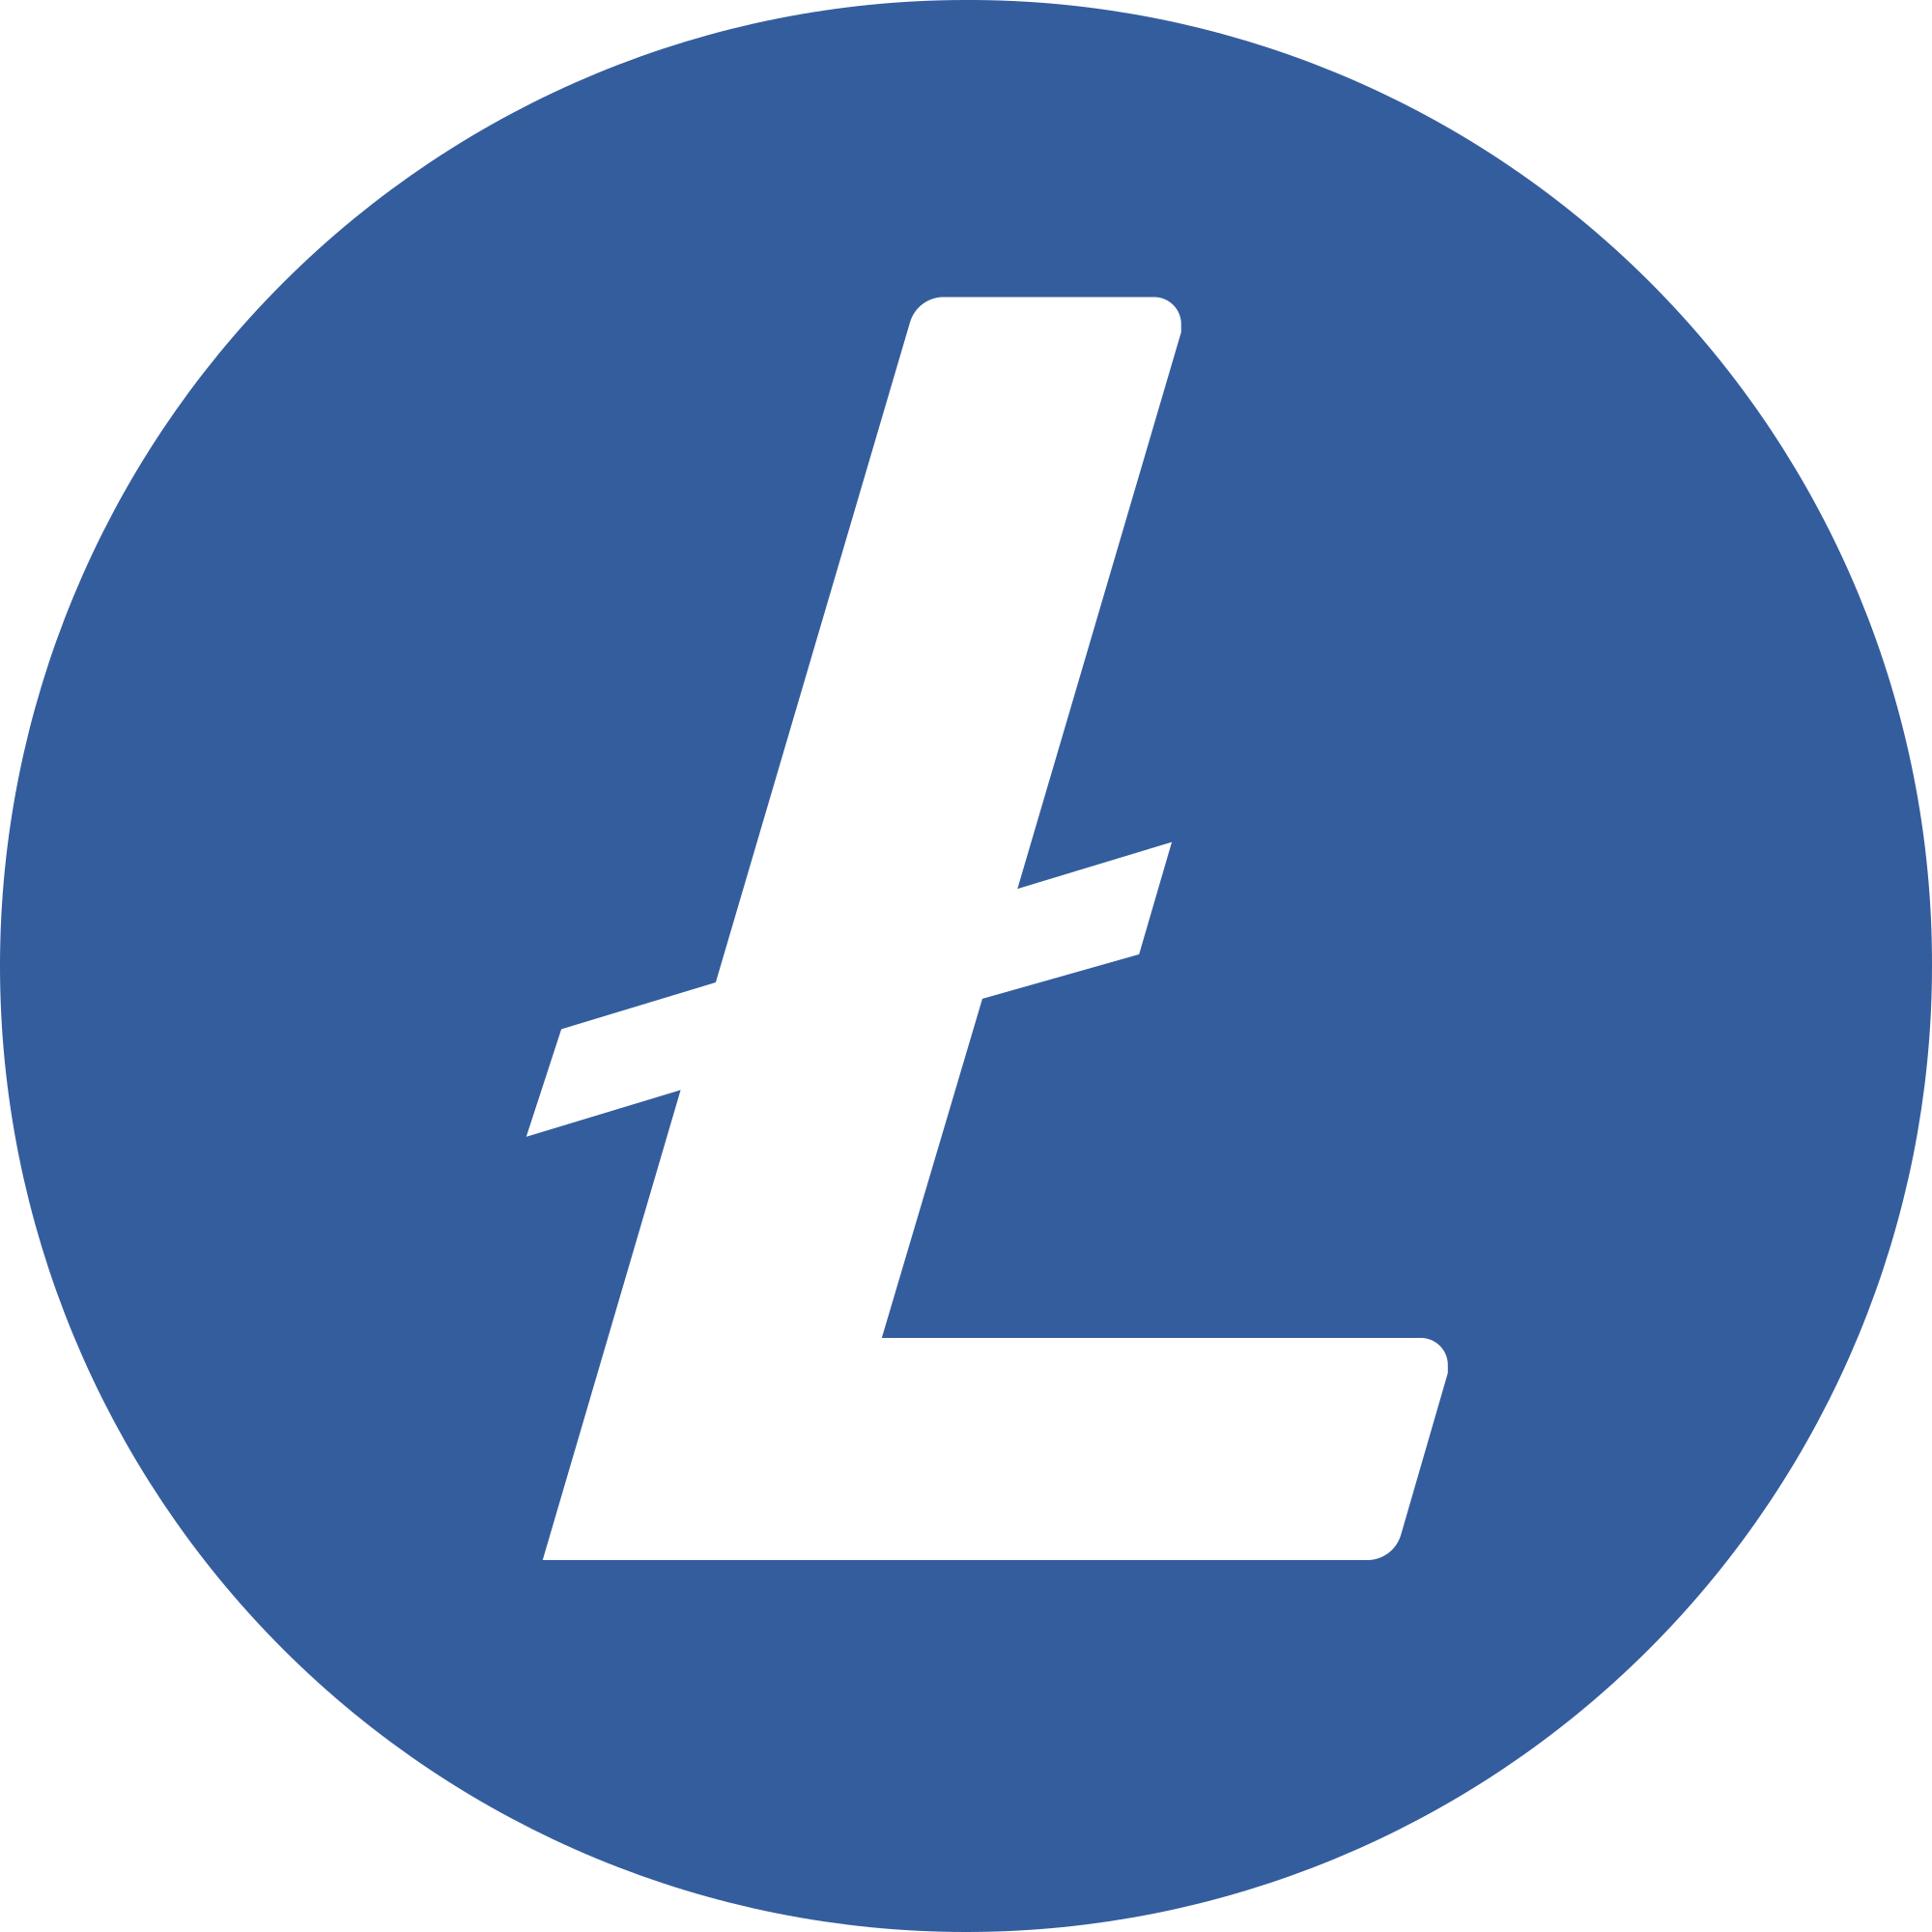 Litecoin logo Icons, Logos, Symbols – Free Download PNG, SVG